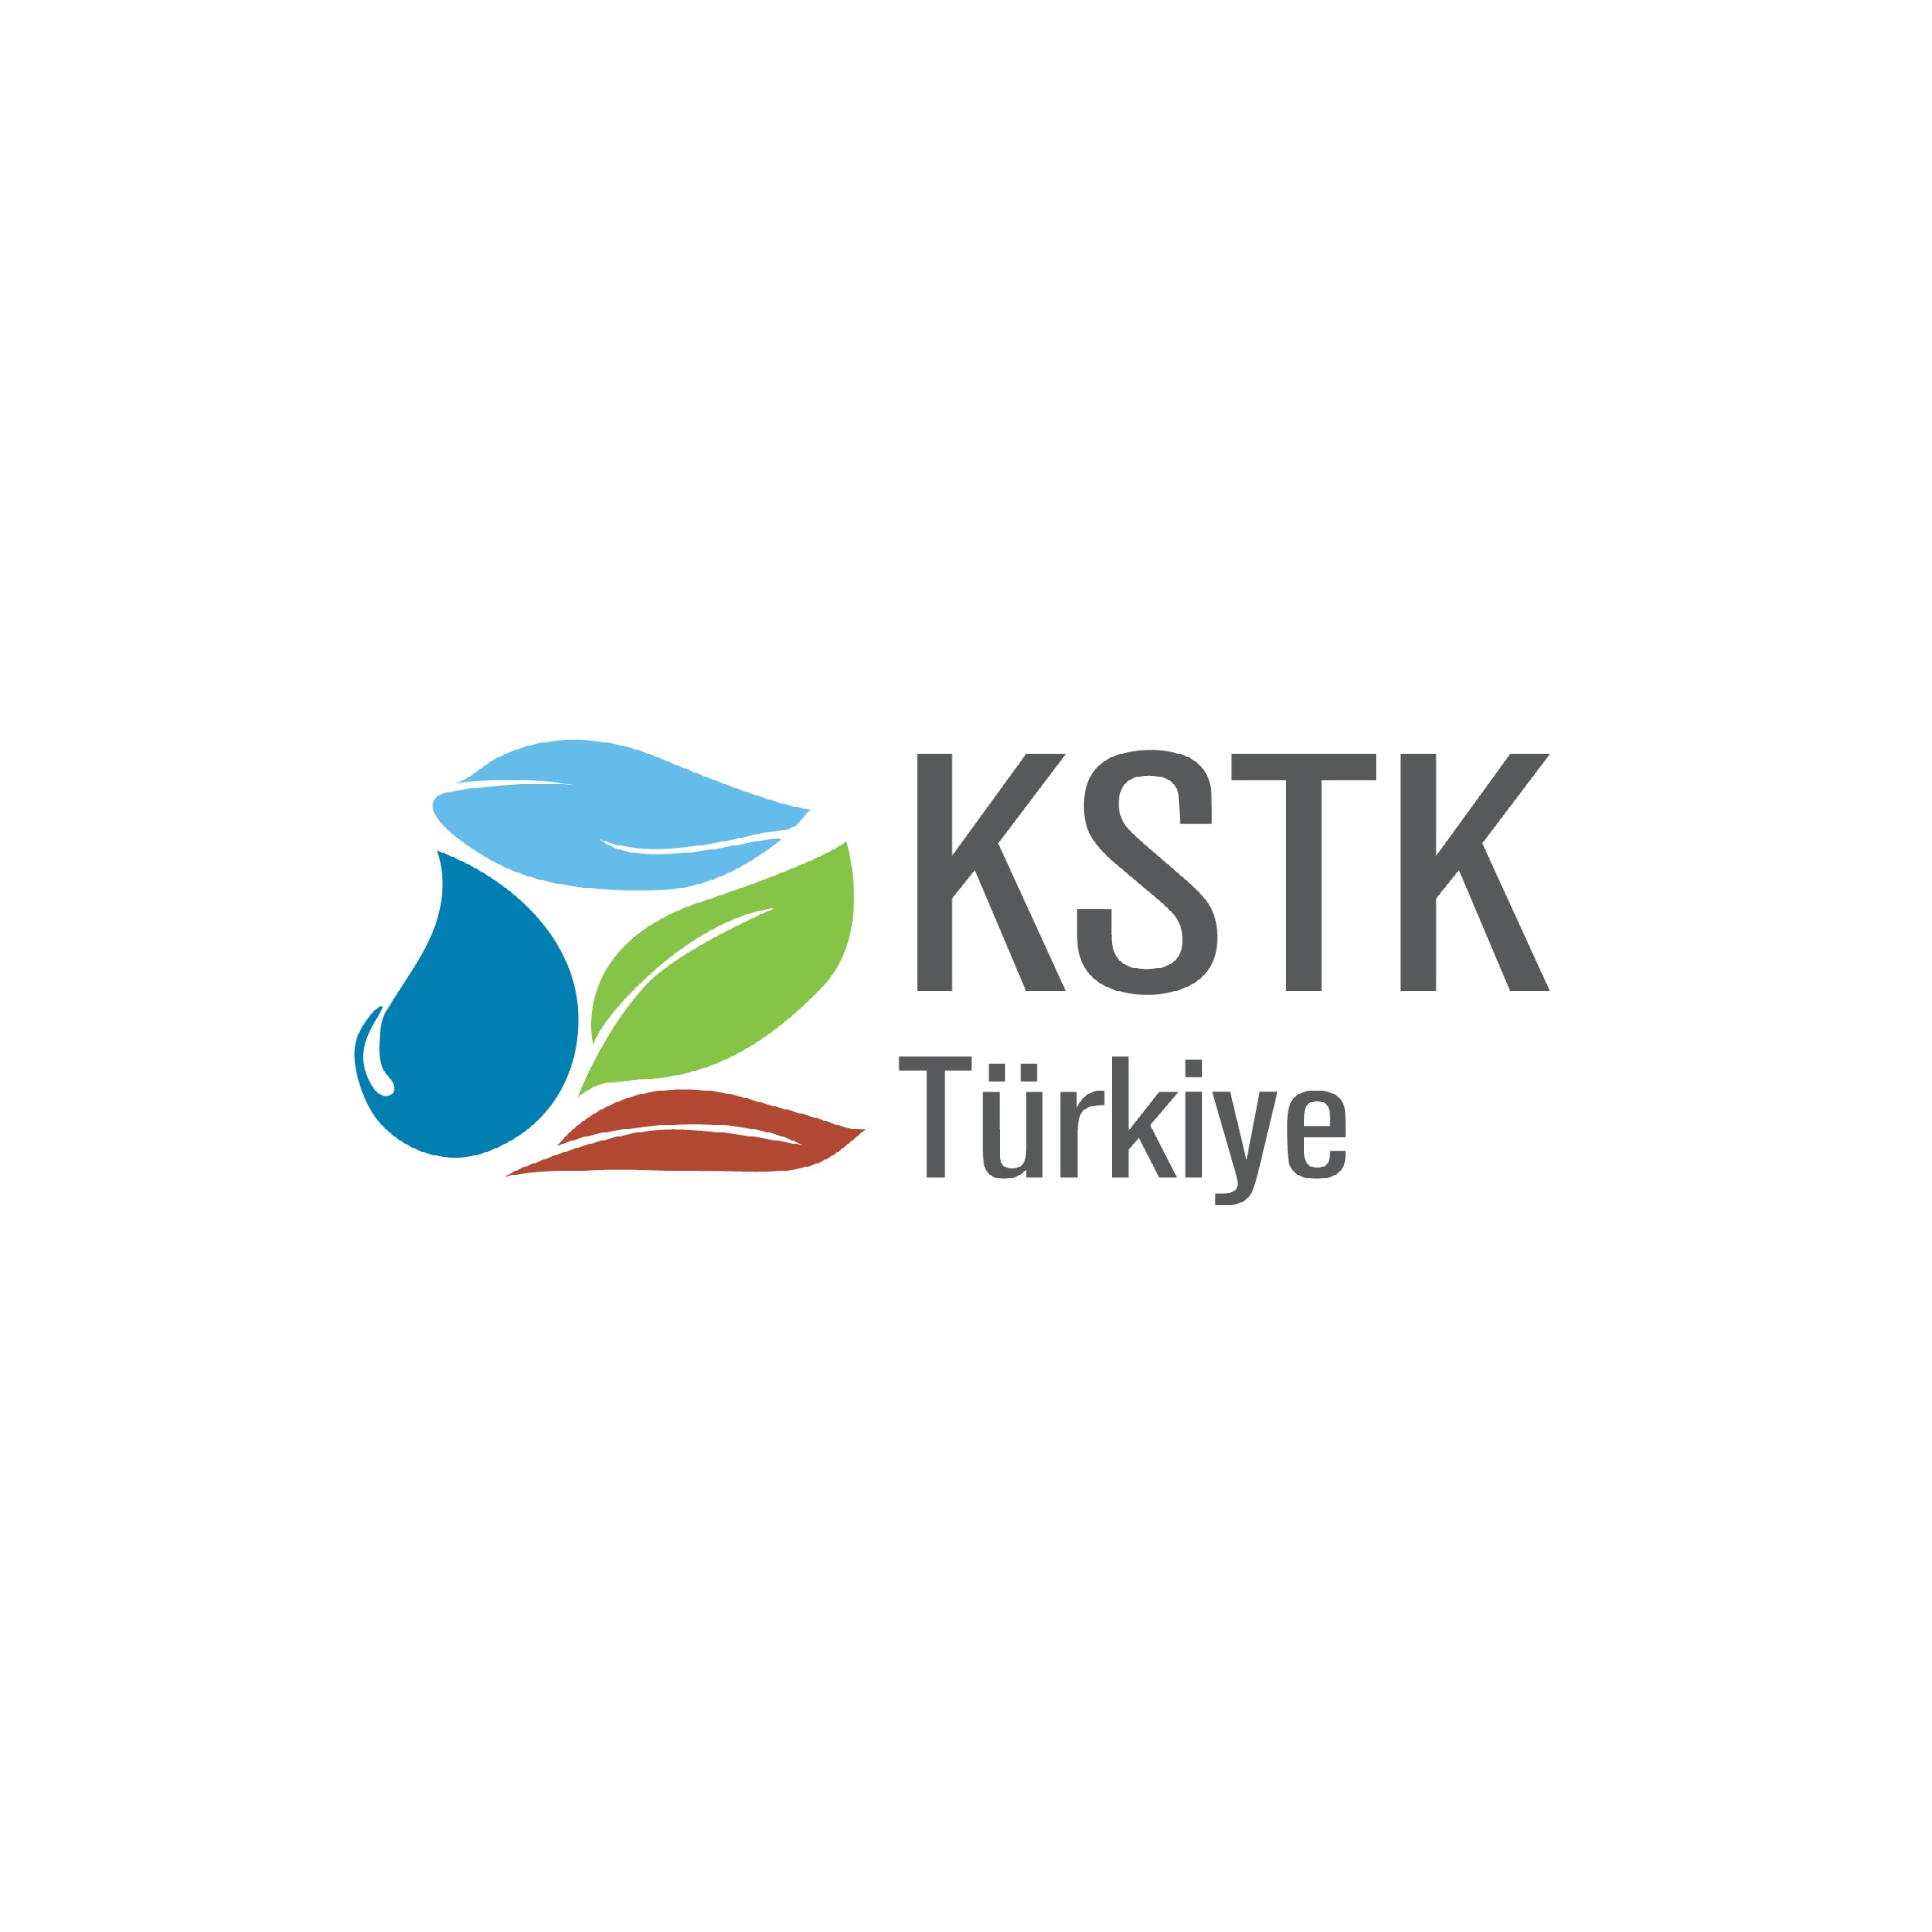 KSTK Yönetmeliği Uygulamaları - Kimya Sanayisi Sektörü